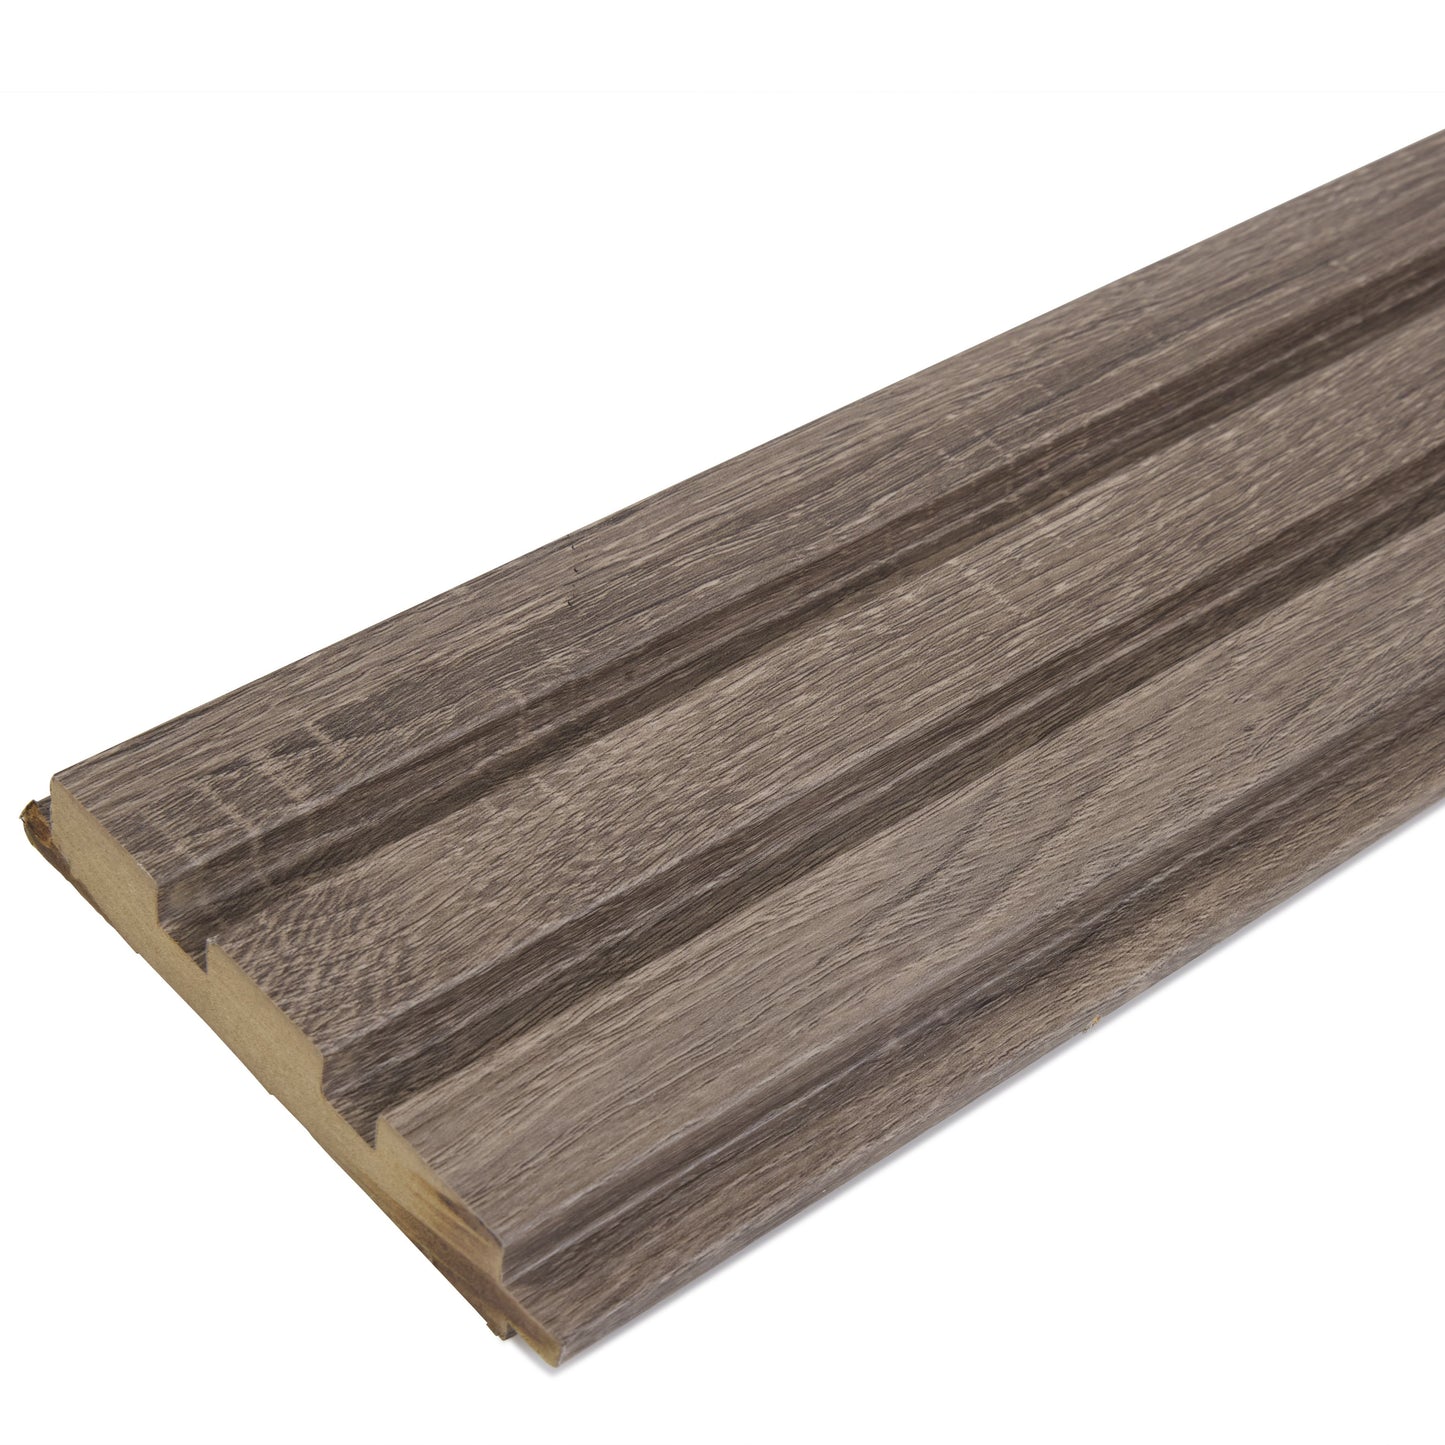 Luxe Acoustic German Oak 3D Slat Panel Wall Profile - MDF - Industry Tile